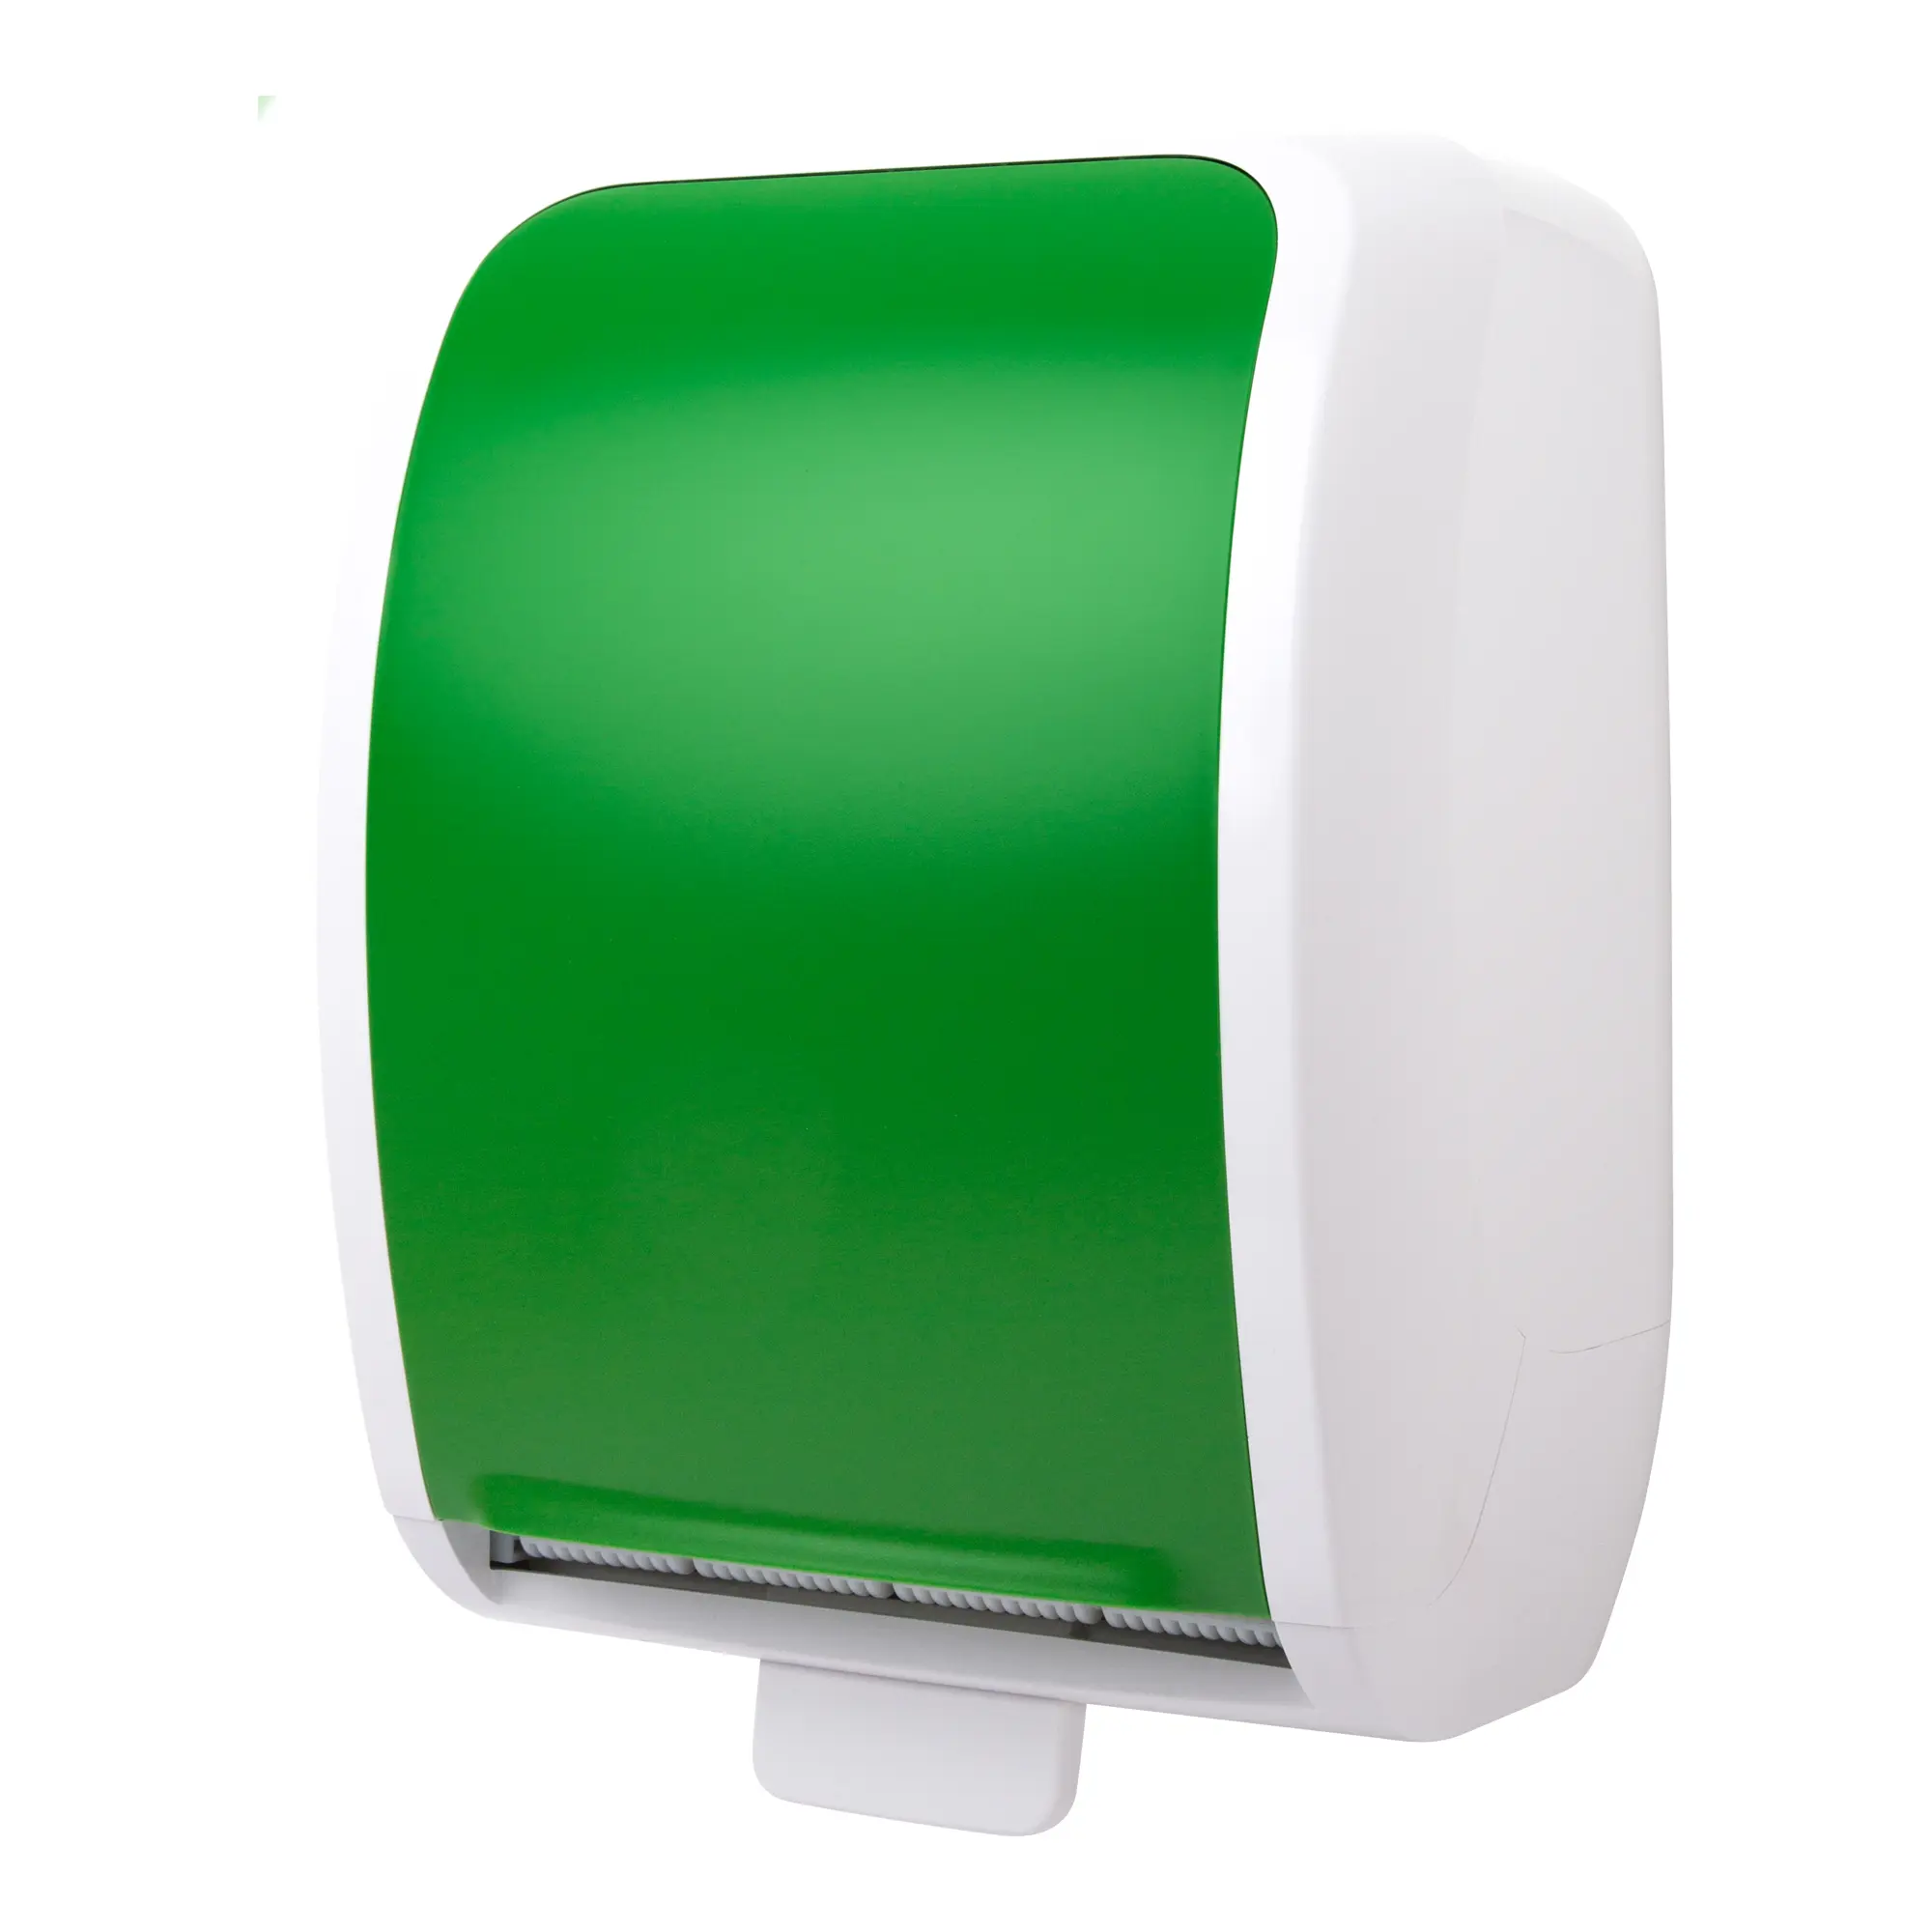 Cosmos Handtuchspender Autocut grün/weiß Cosmos-3350-SAR_1